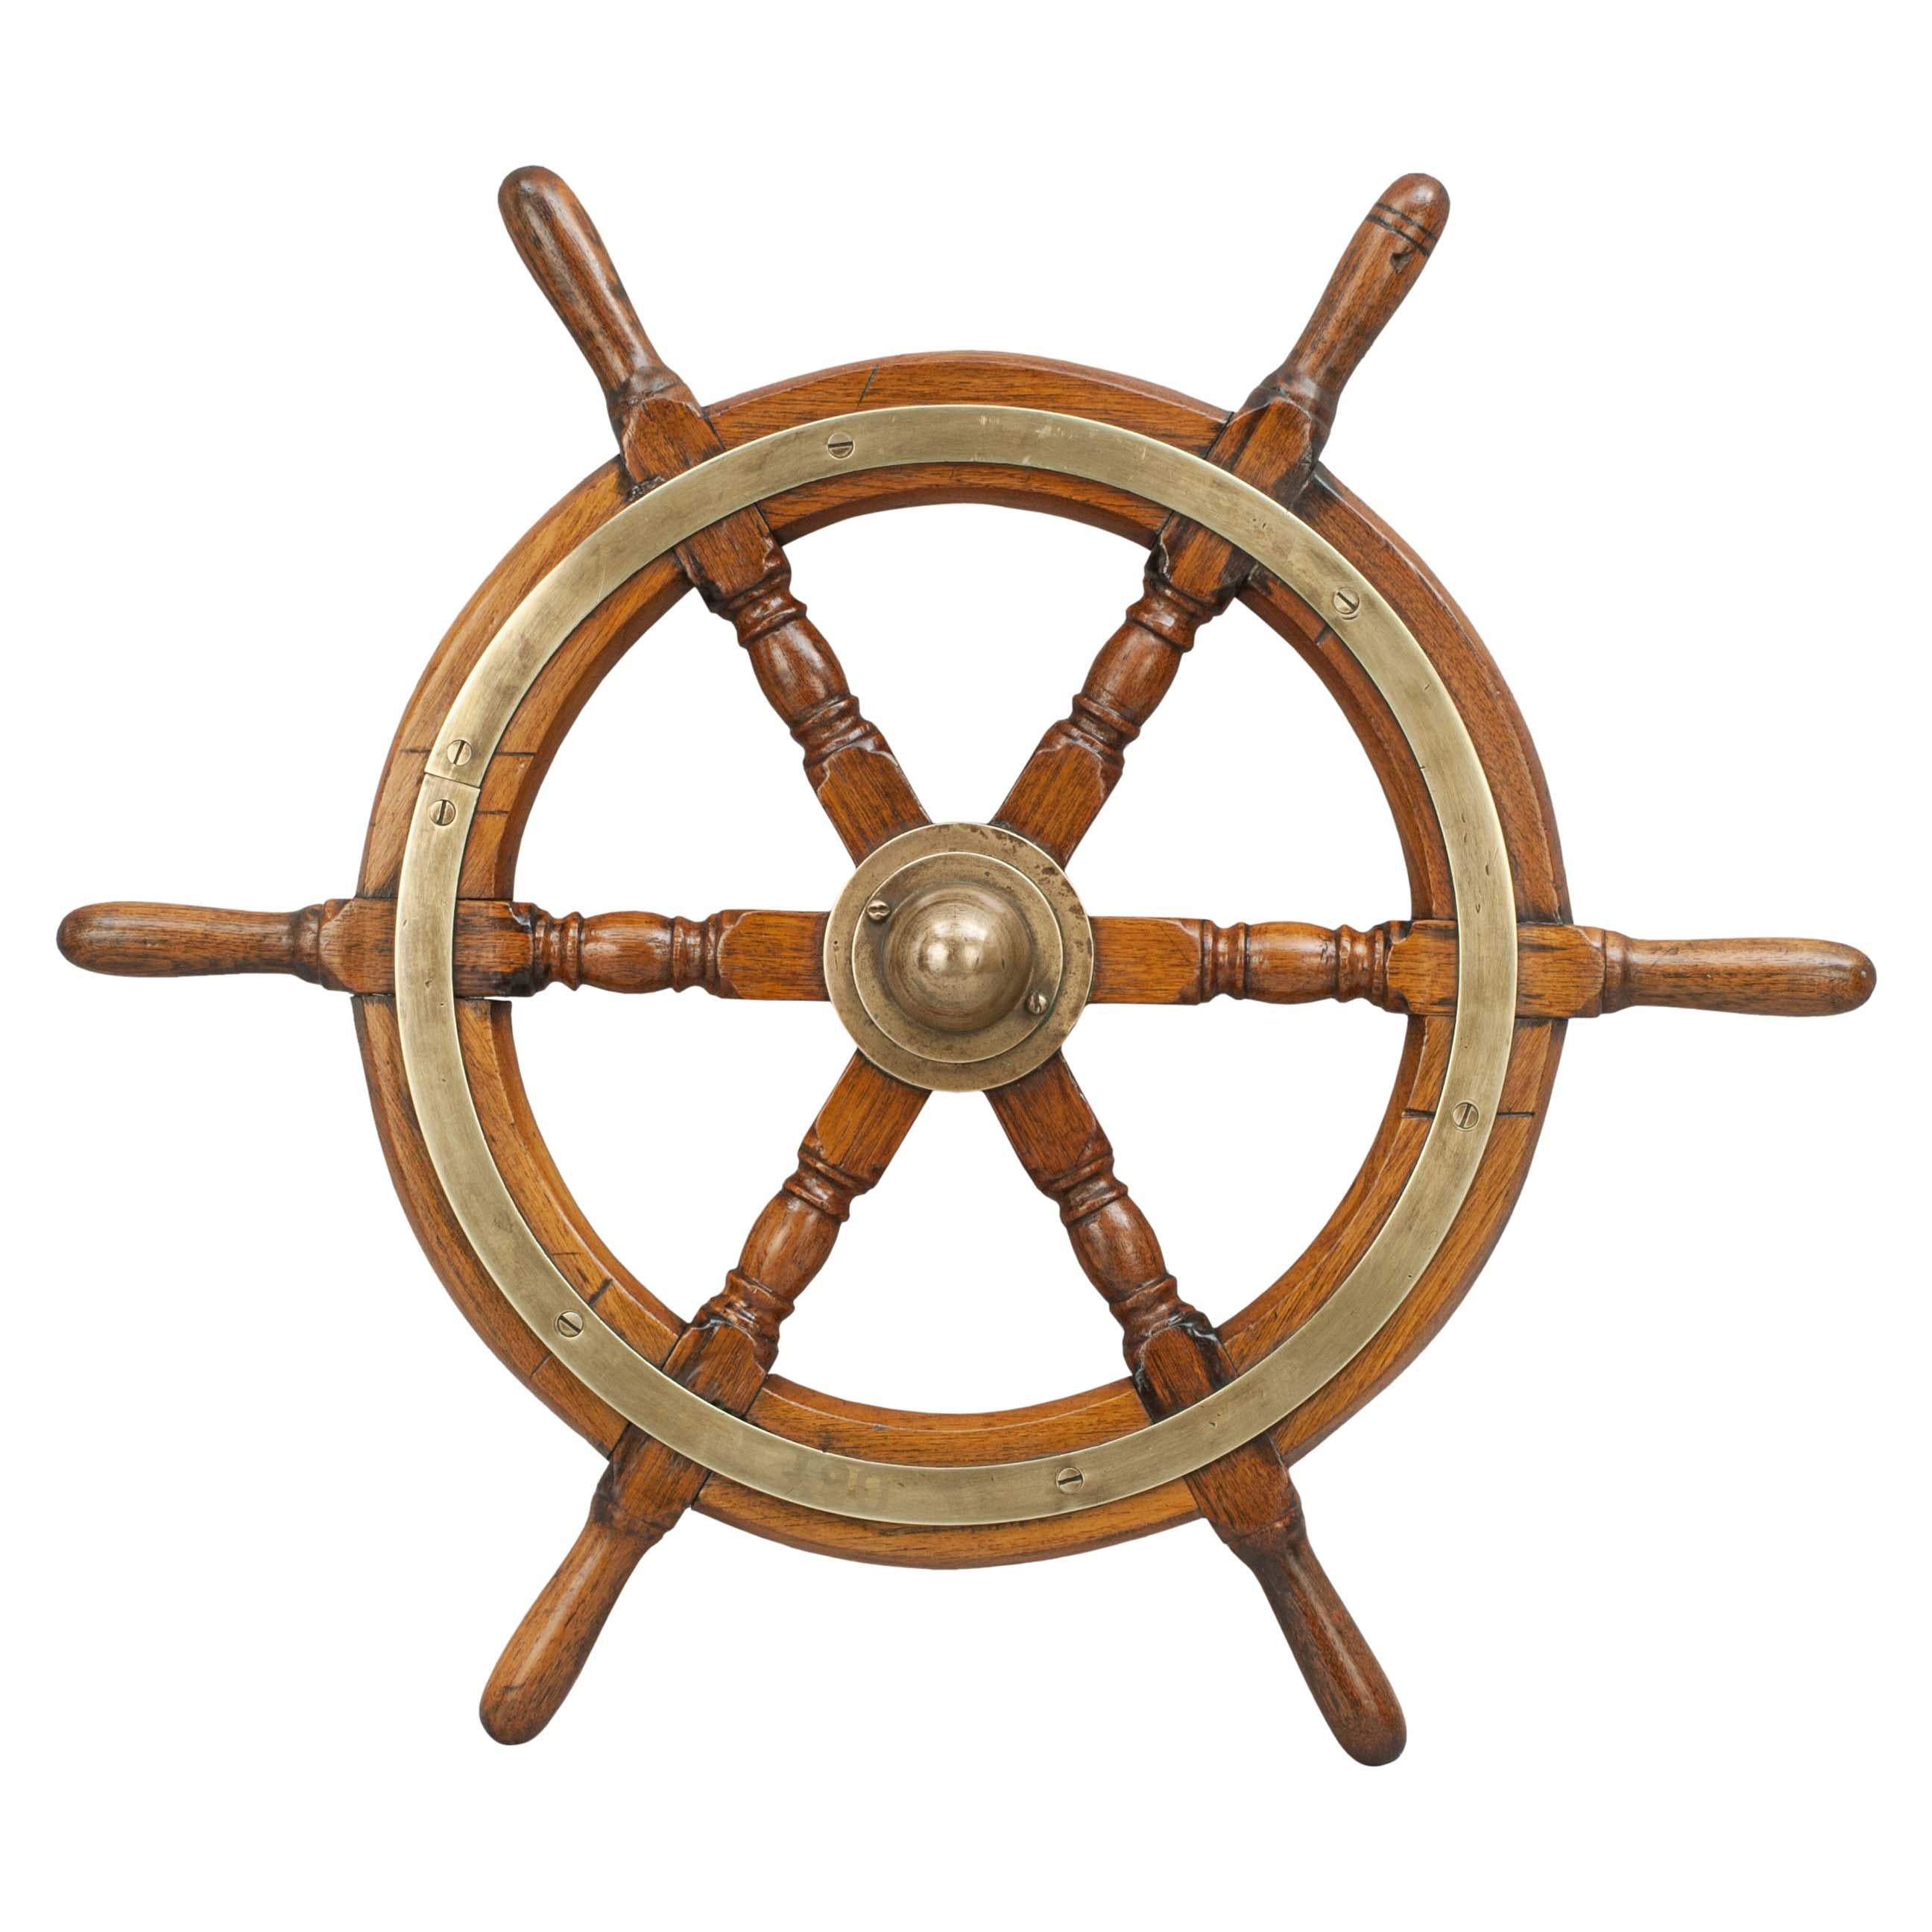 Vintage Teak Ships Wheel, 6 Spoke Helm Wheel, Teak and Brass